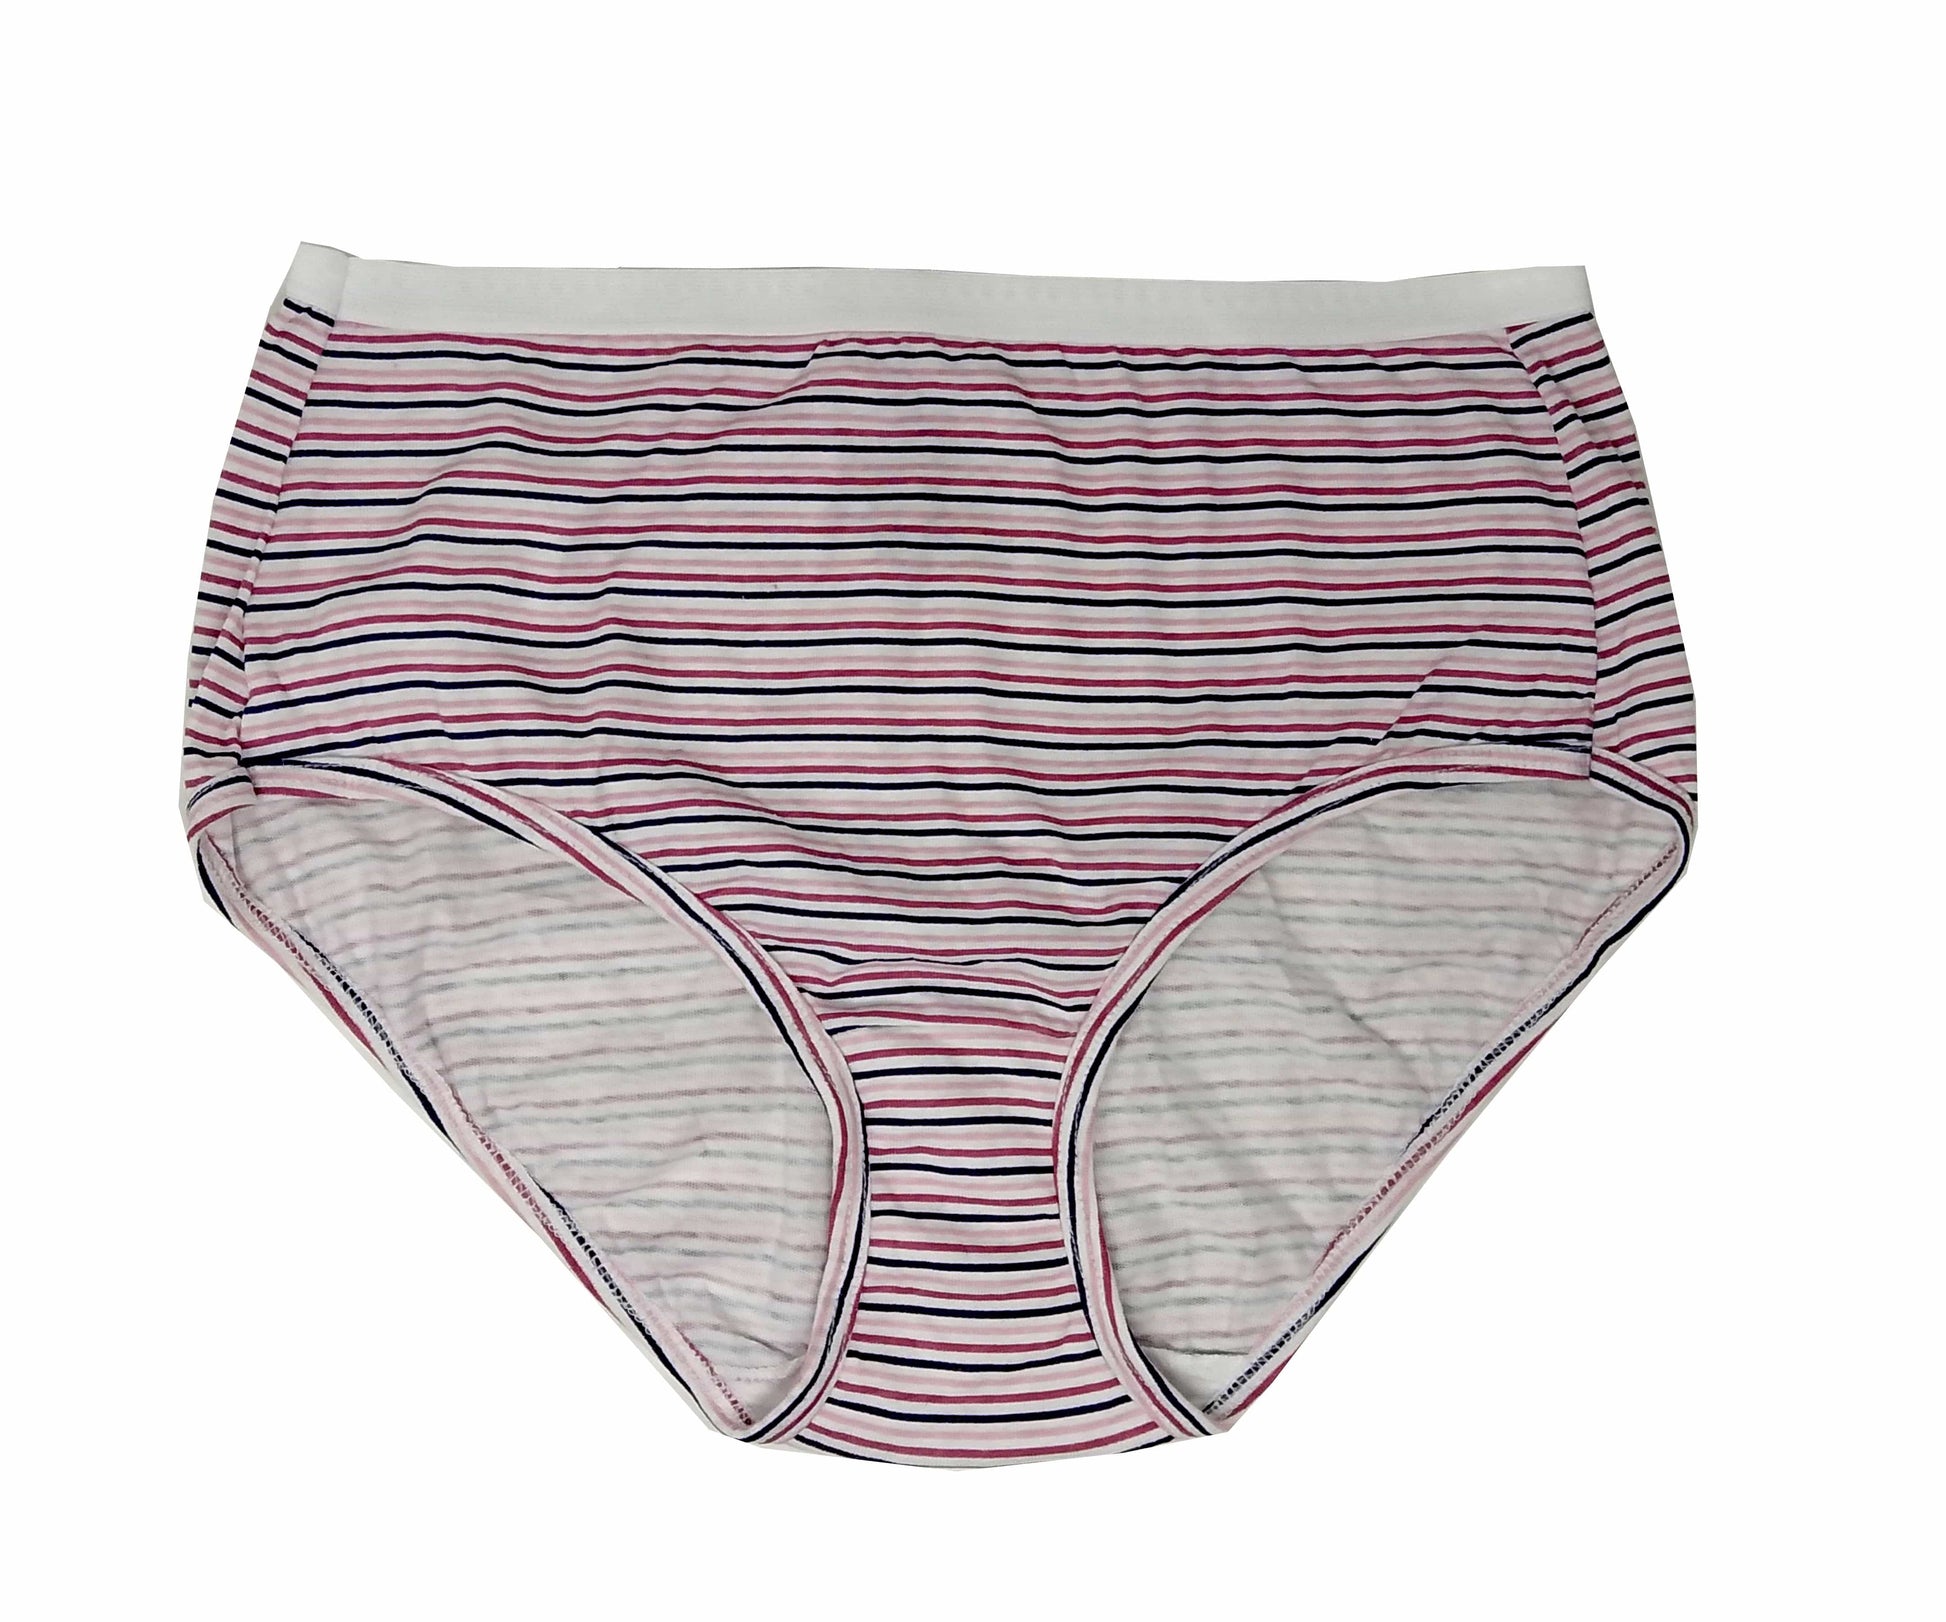 Hanes womens underwear Medium / Multi-Color HANES - Striped Pantie